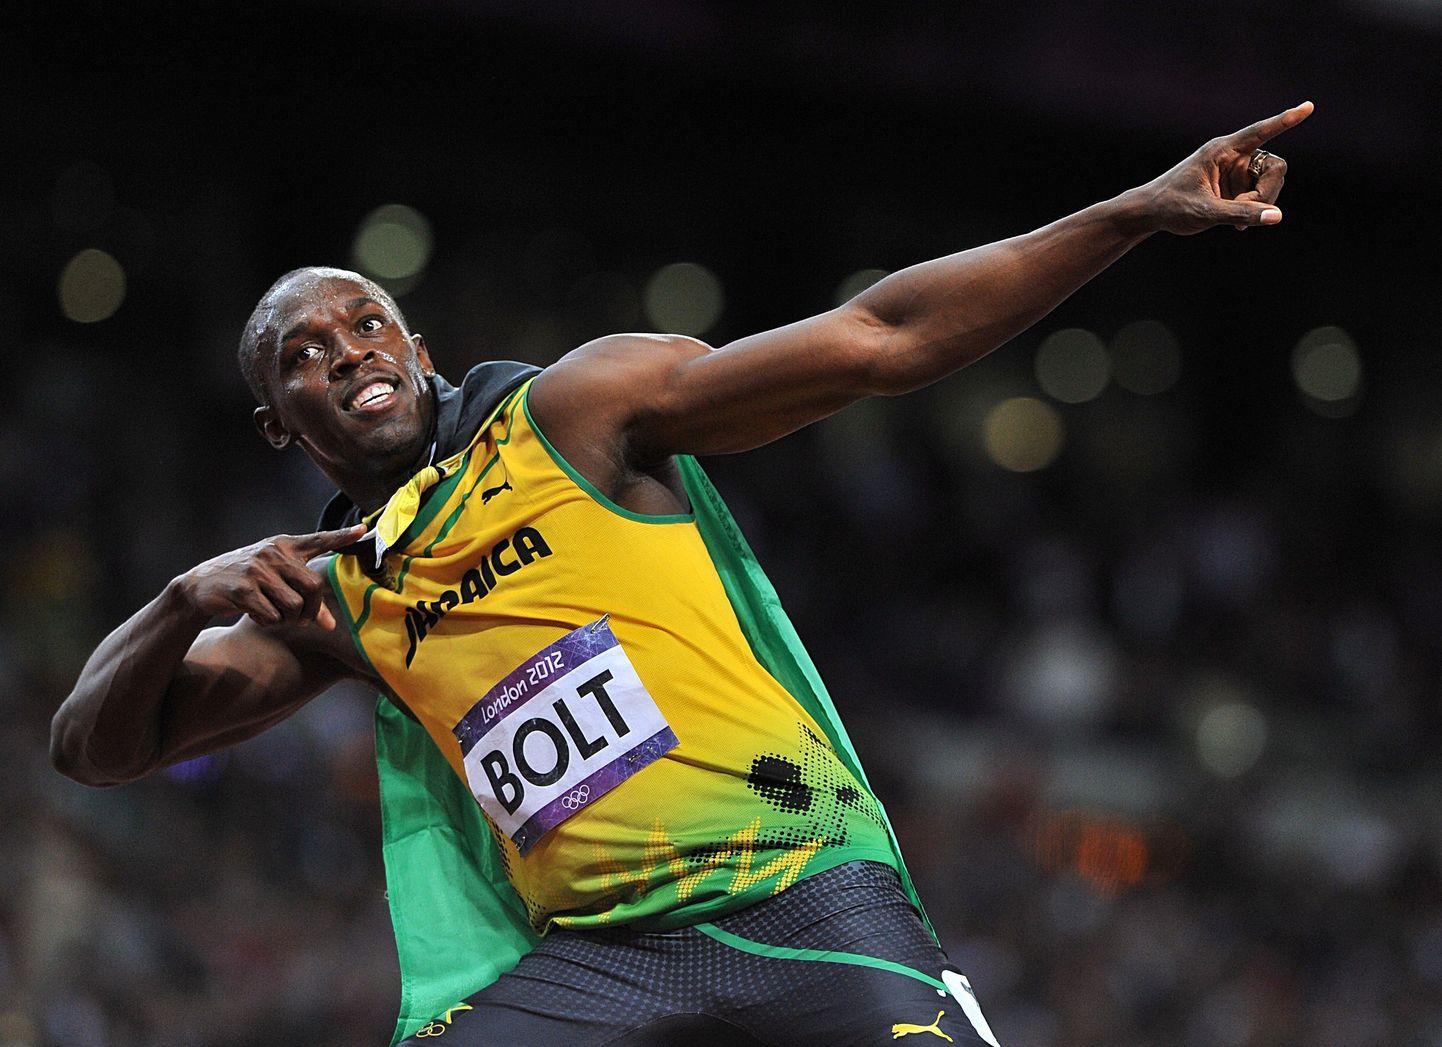 Jamaica jooksukuulsus Usain Bolt tähisatams 2012. aastal Londonis 100 meetri jooksu võitu.